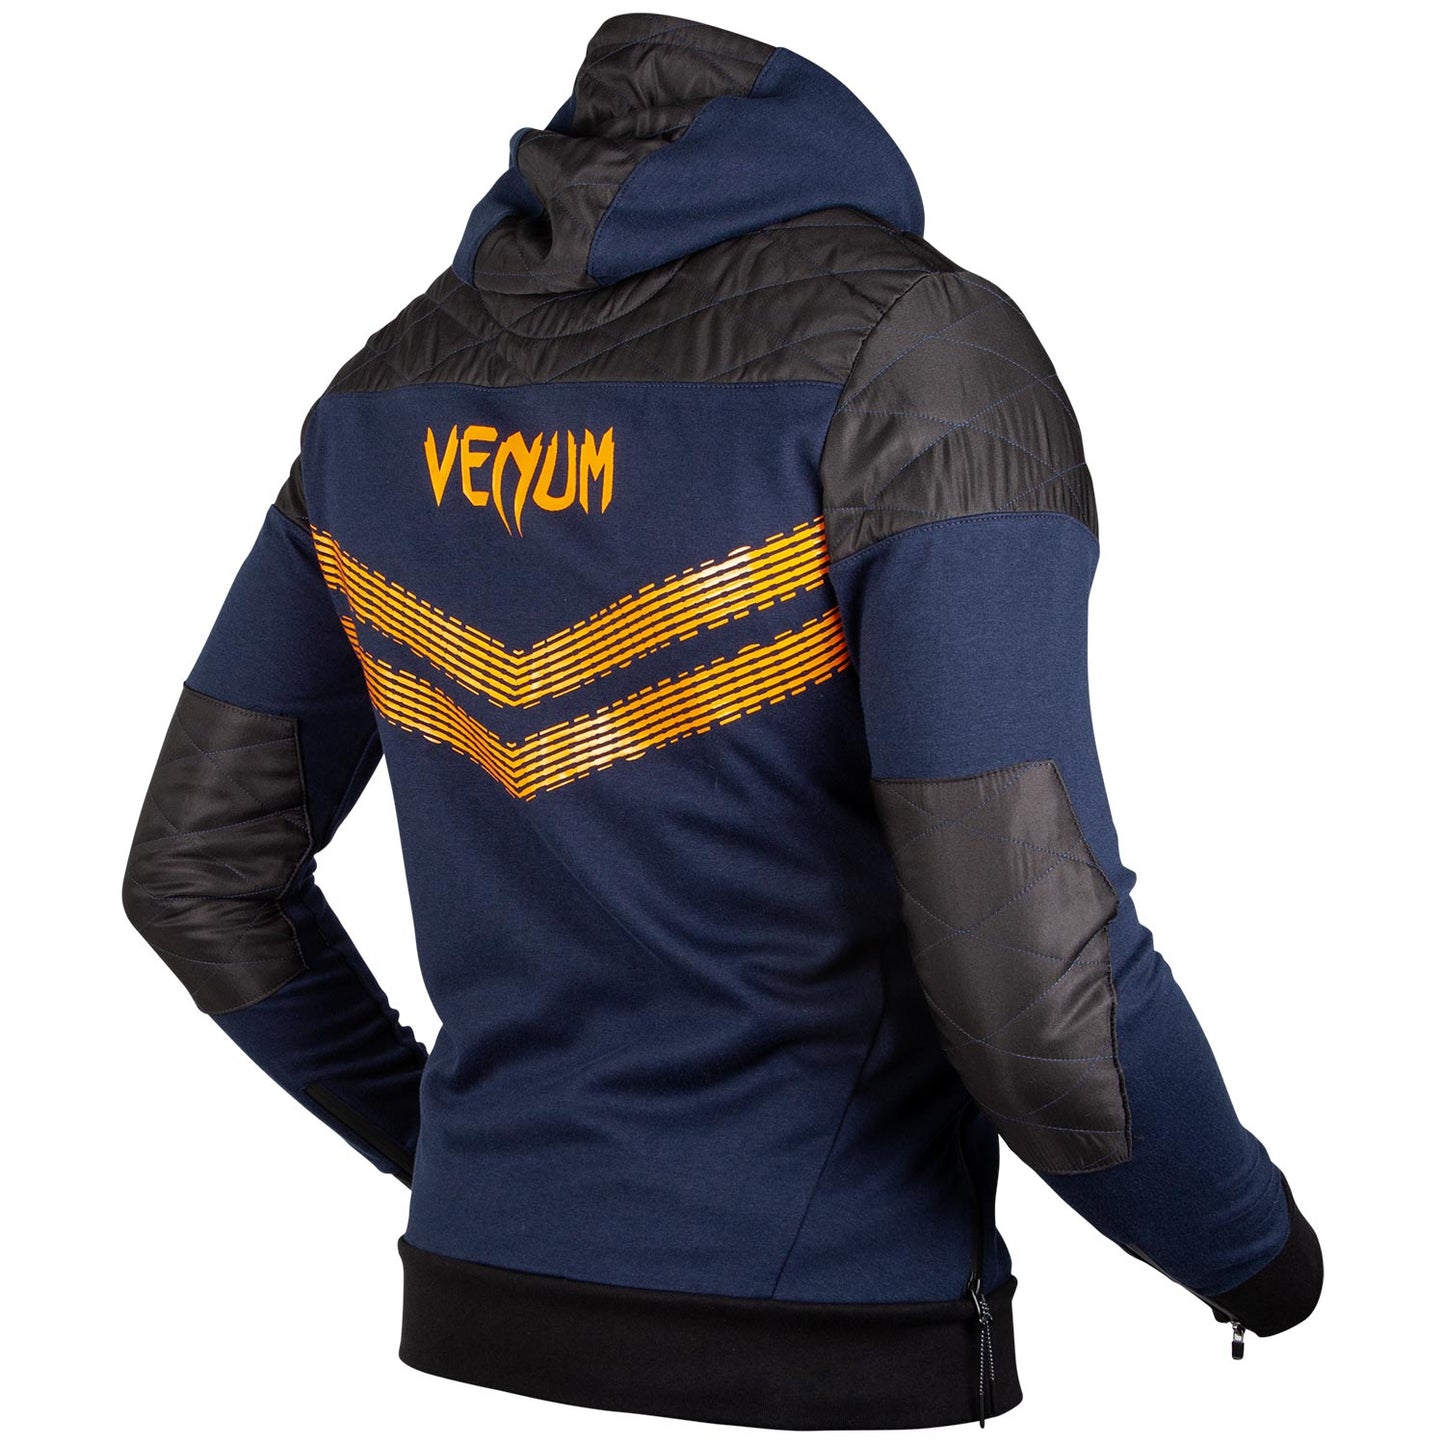 Sweatshirt Venum Laser 2.0 - Blau Grau meliert